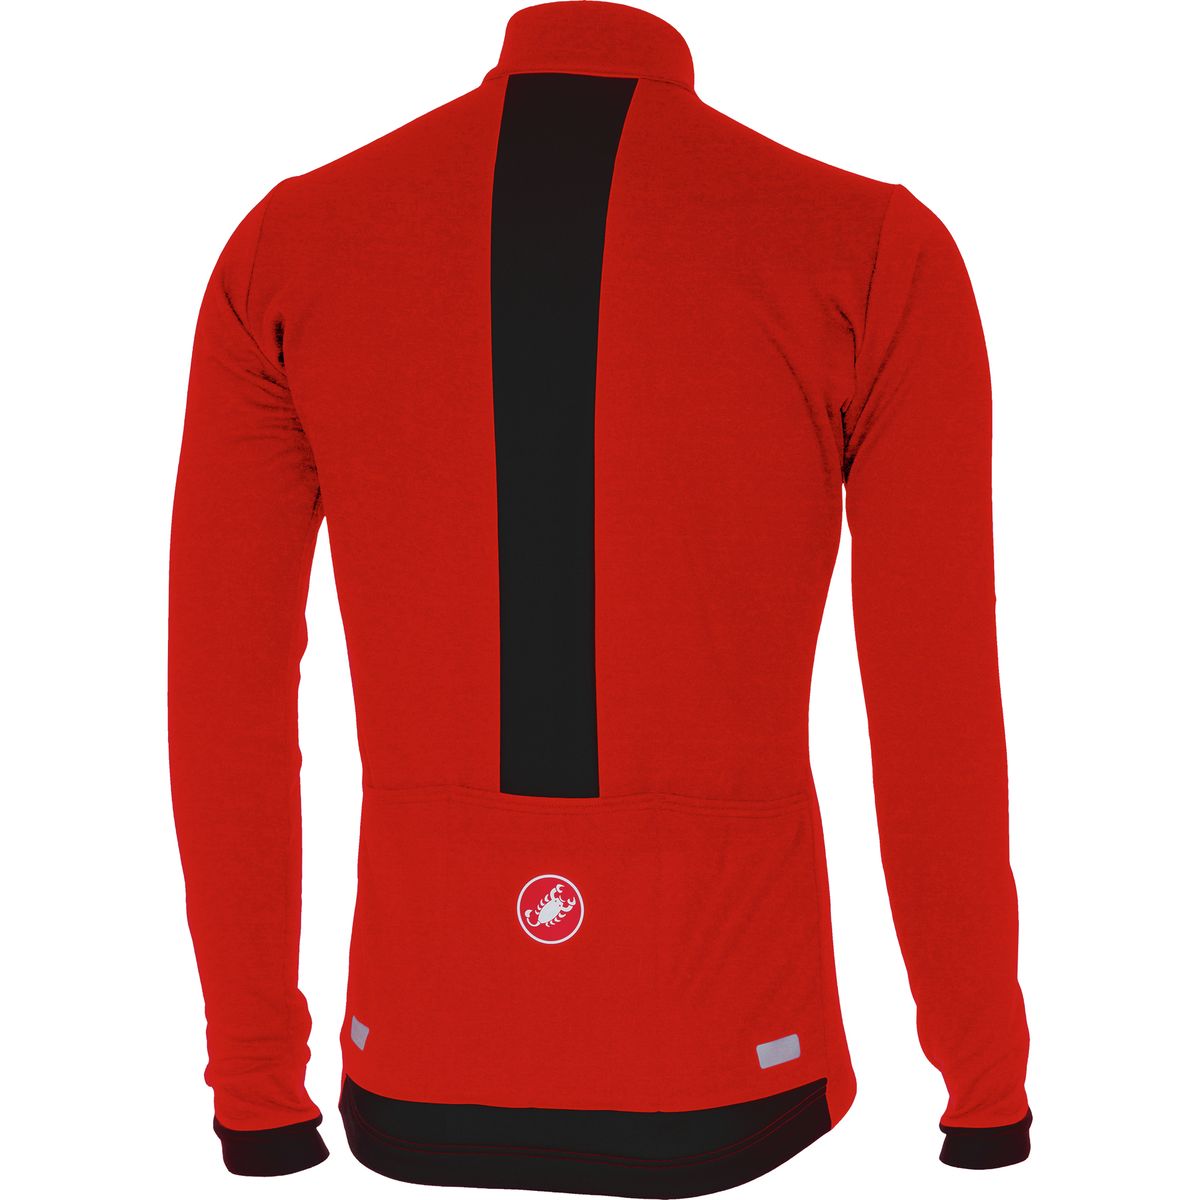 Download Castelli Fondo Full-Zip Long-Sleeve Jersey - Men's | eBay